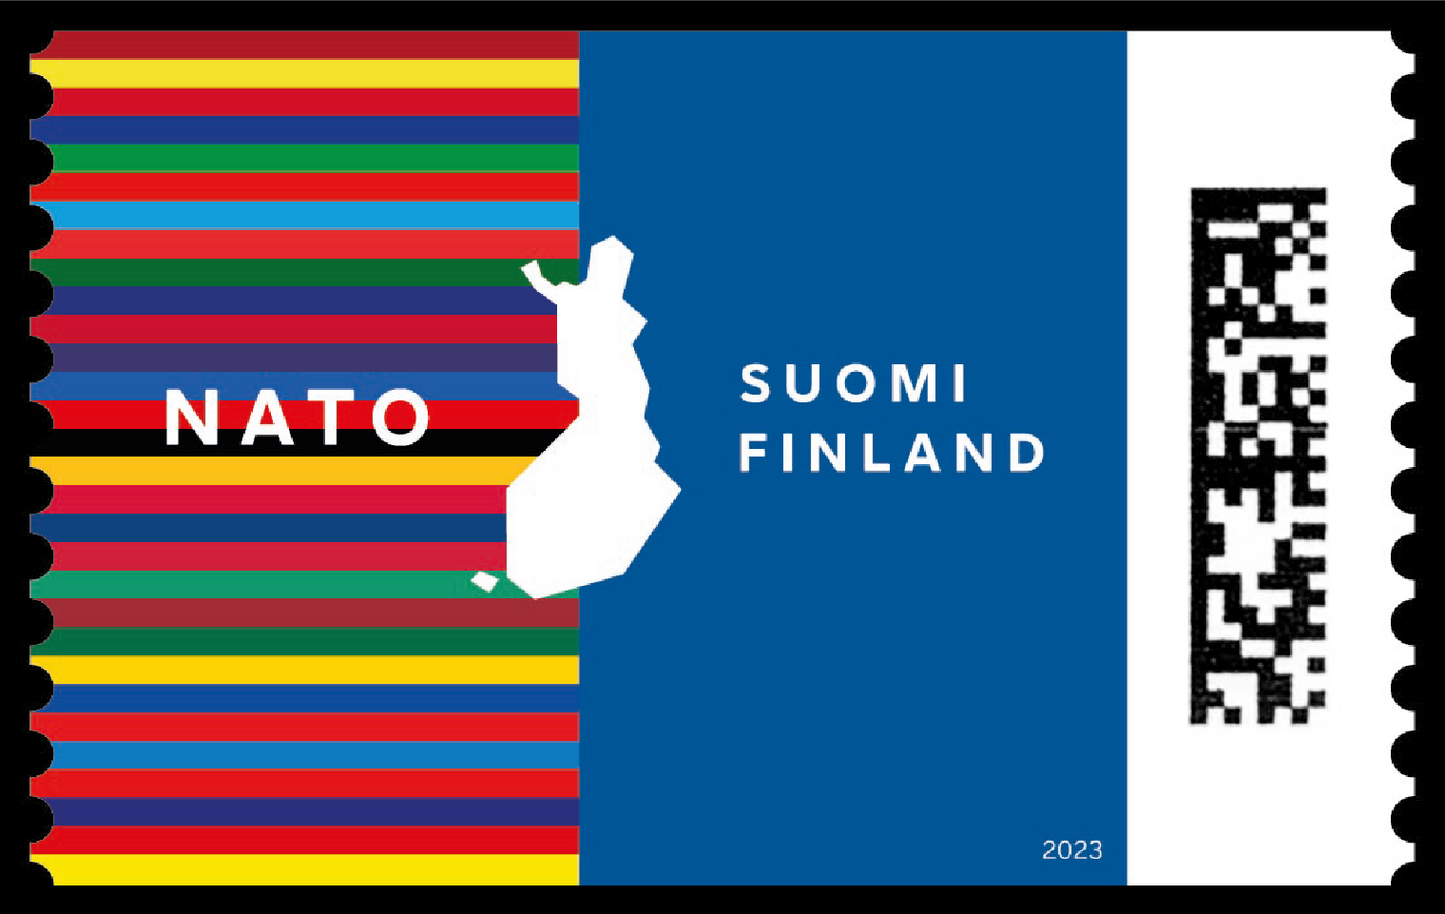 Finland in NATO -mint